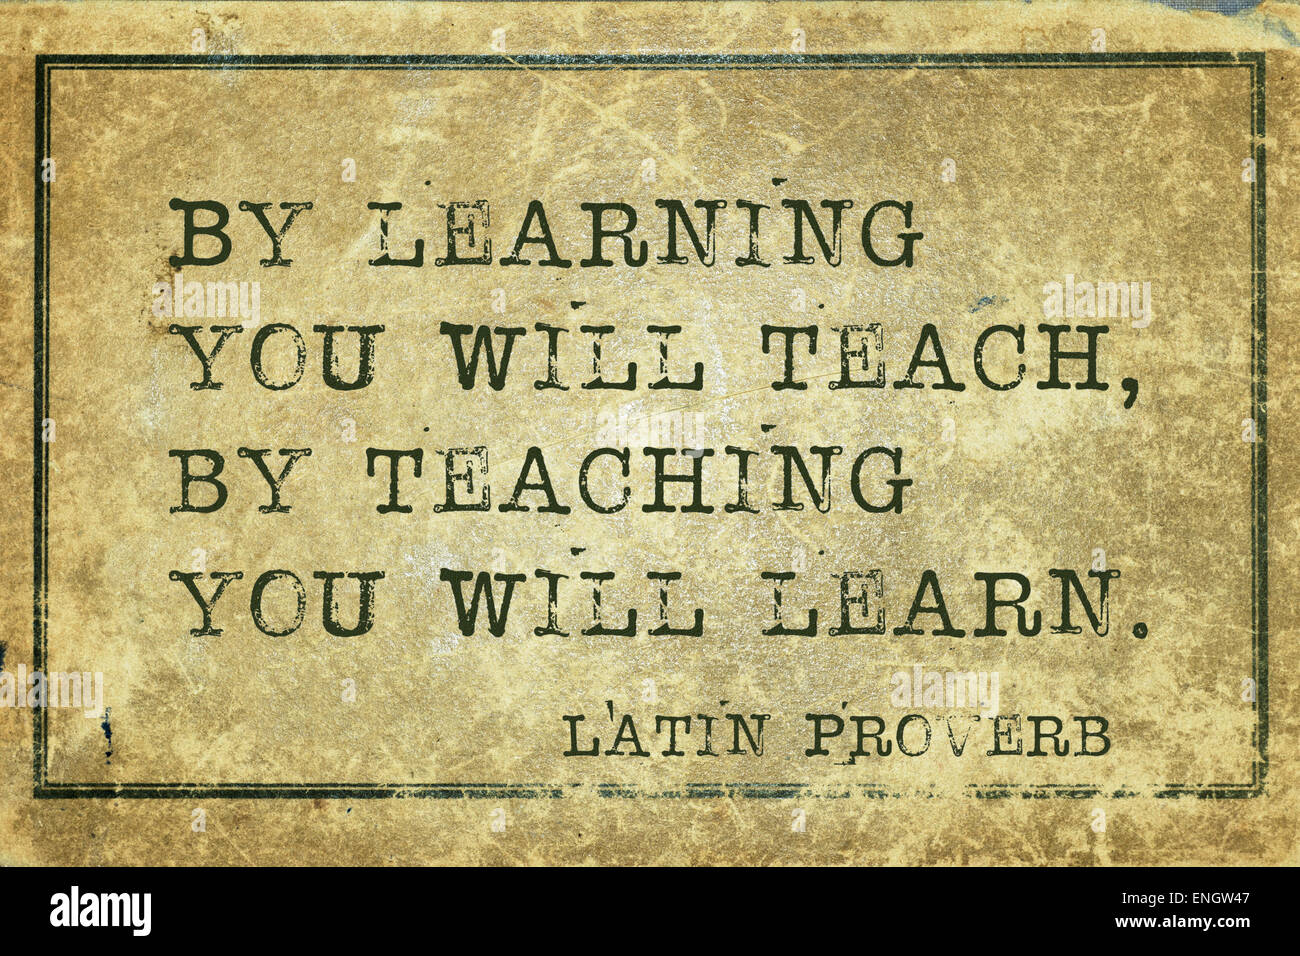 Mediante el aprendizaje que va a enseñar, enseñando aprenderás - antiguo proverbio latino impreso en cartón vintage grunge Foto de stock